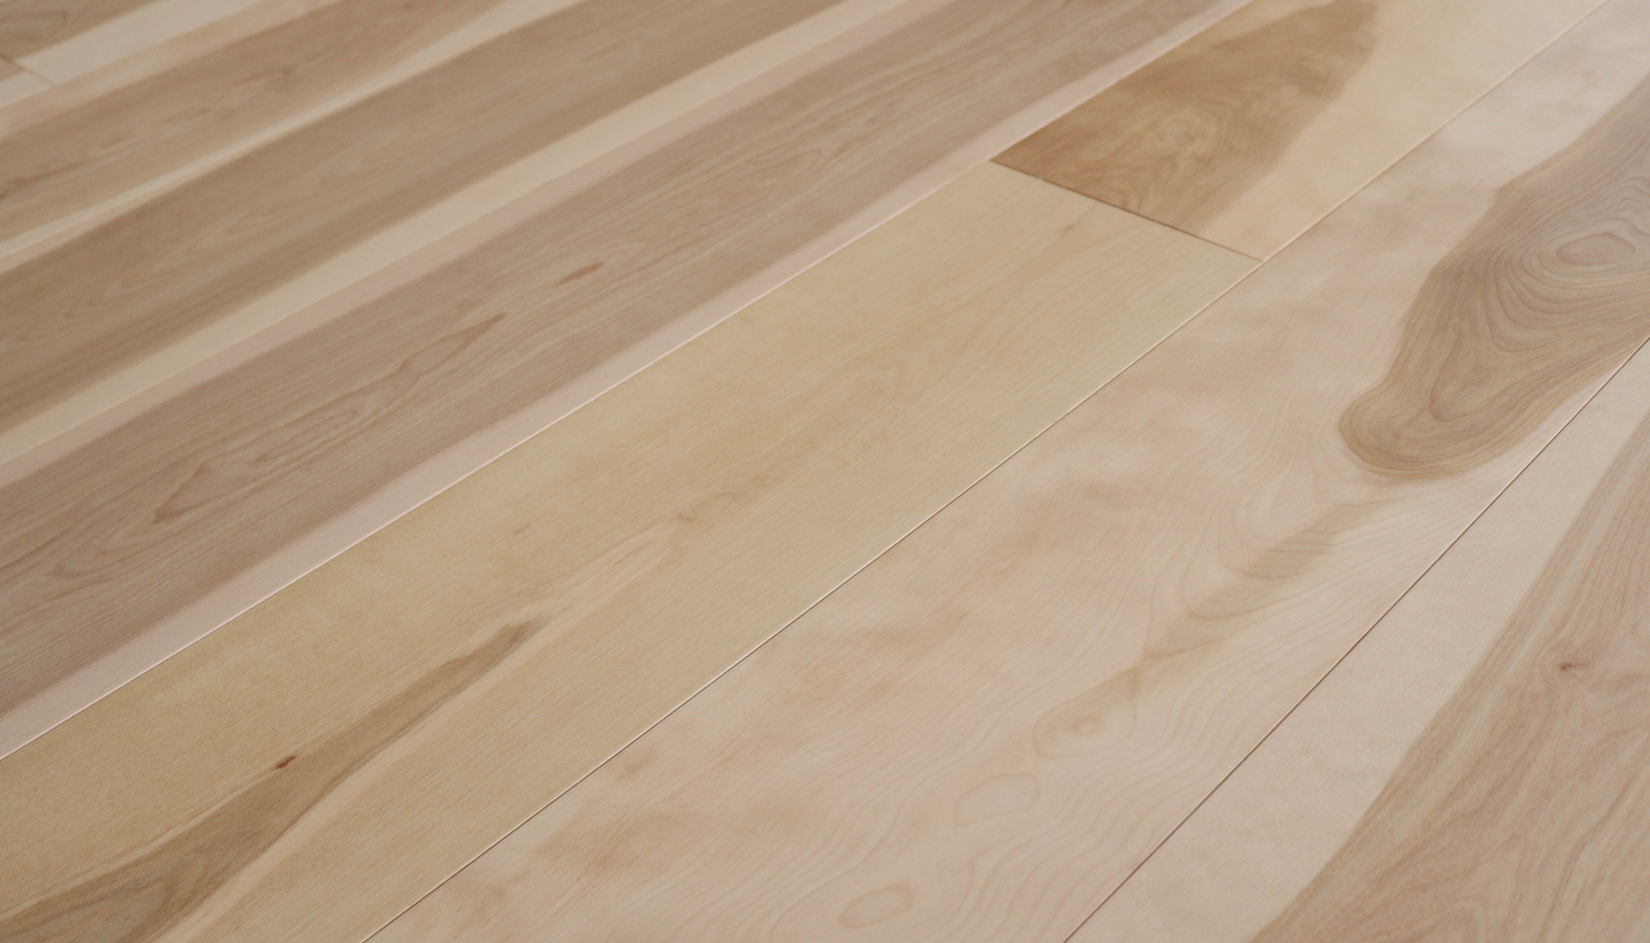 Flat White Maple Lv Hardwood, White Maple Vinyl Plank Flooring